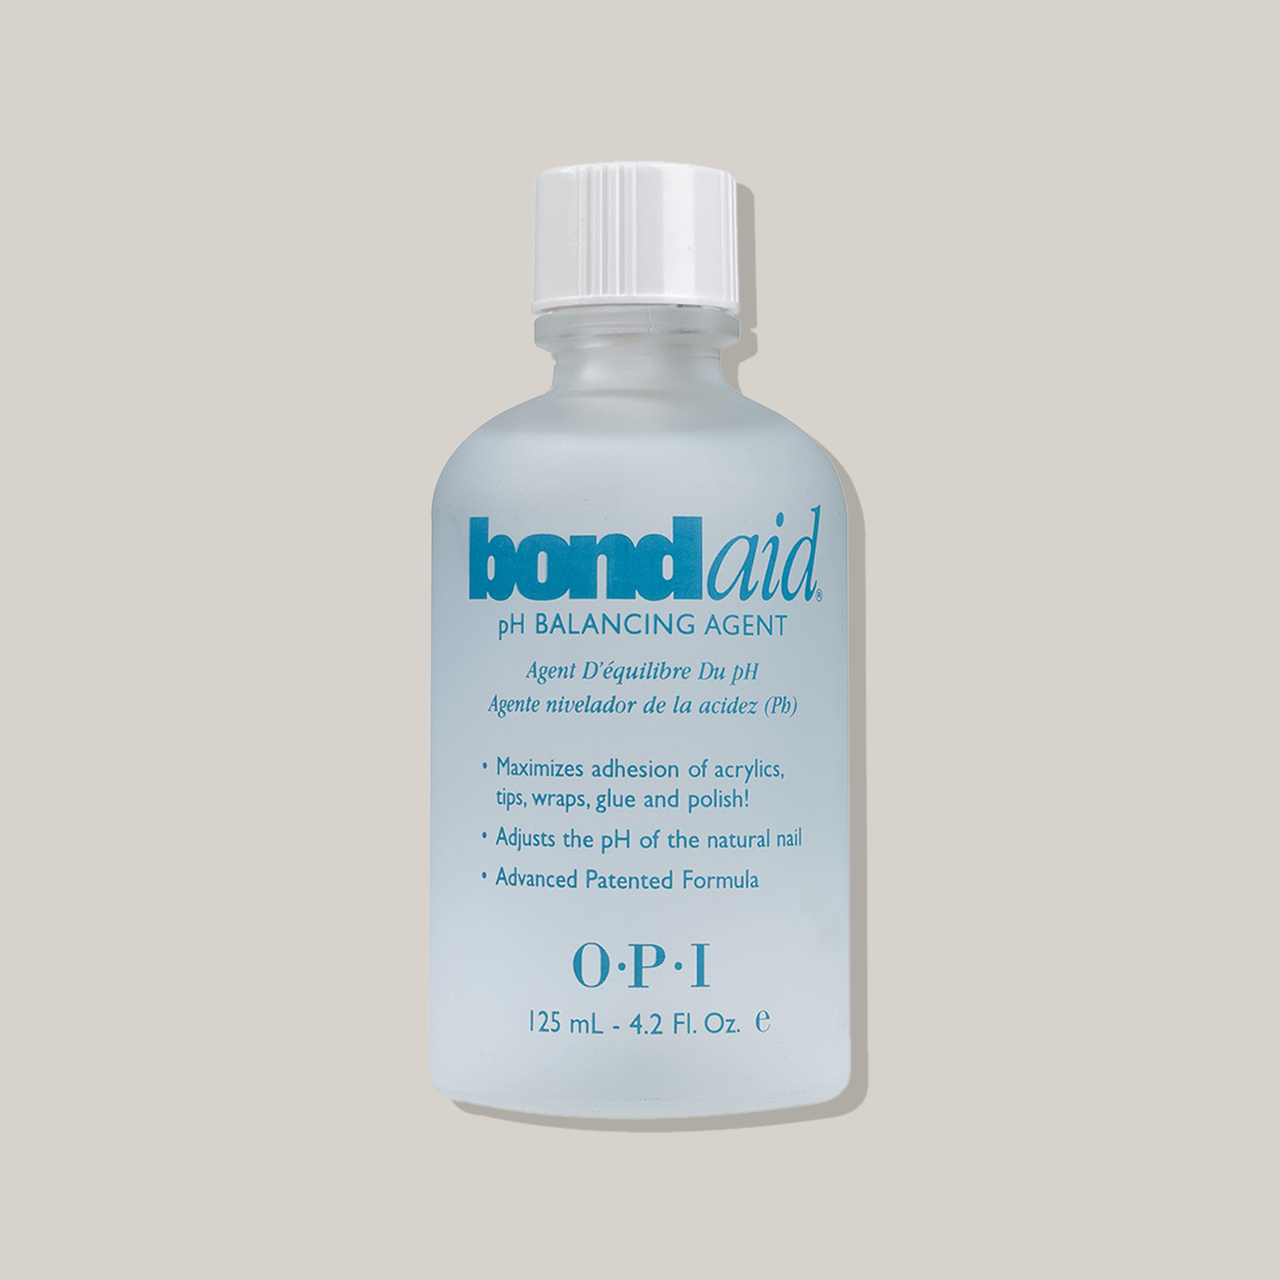 Opi BOND AID BB020 